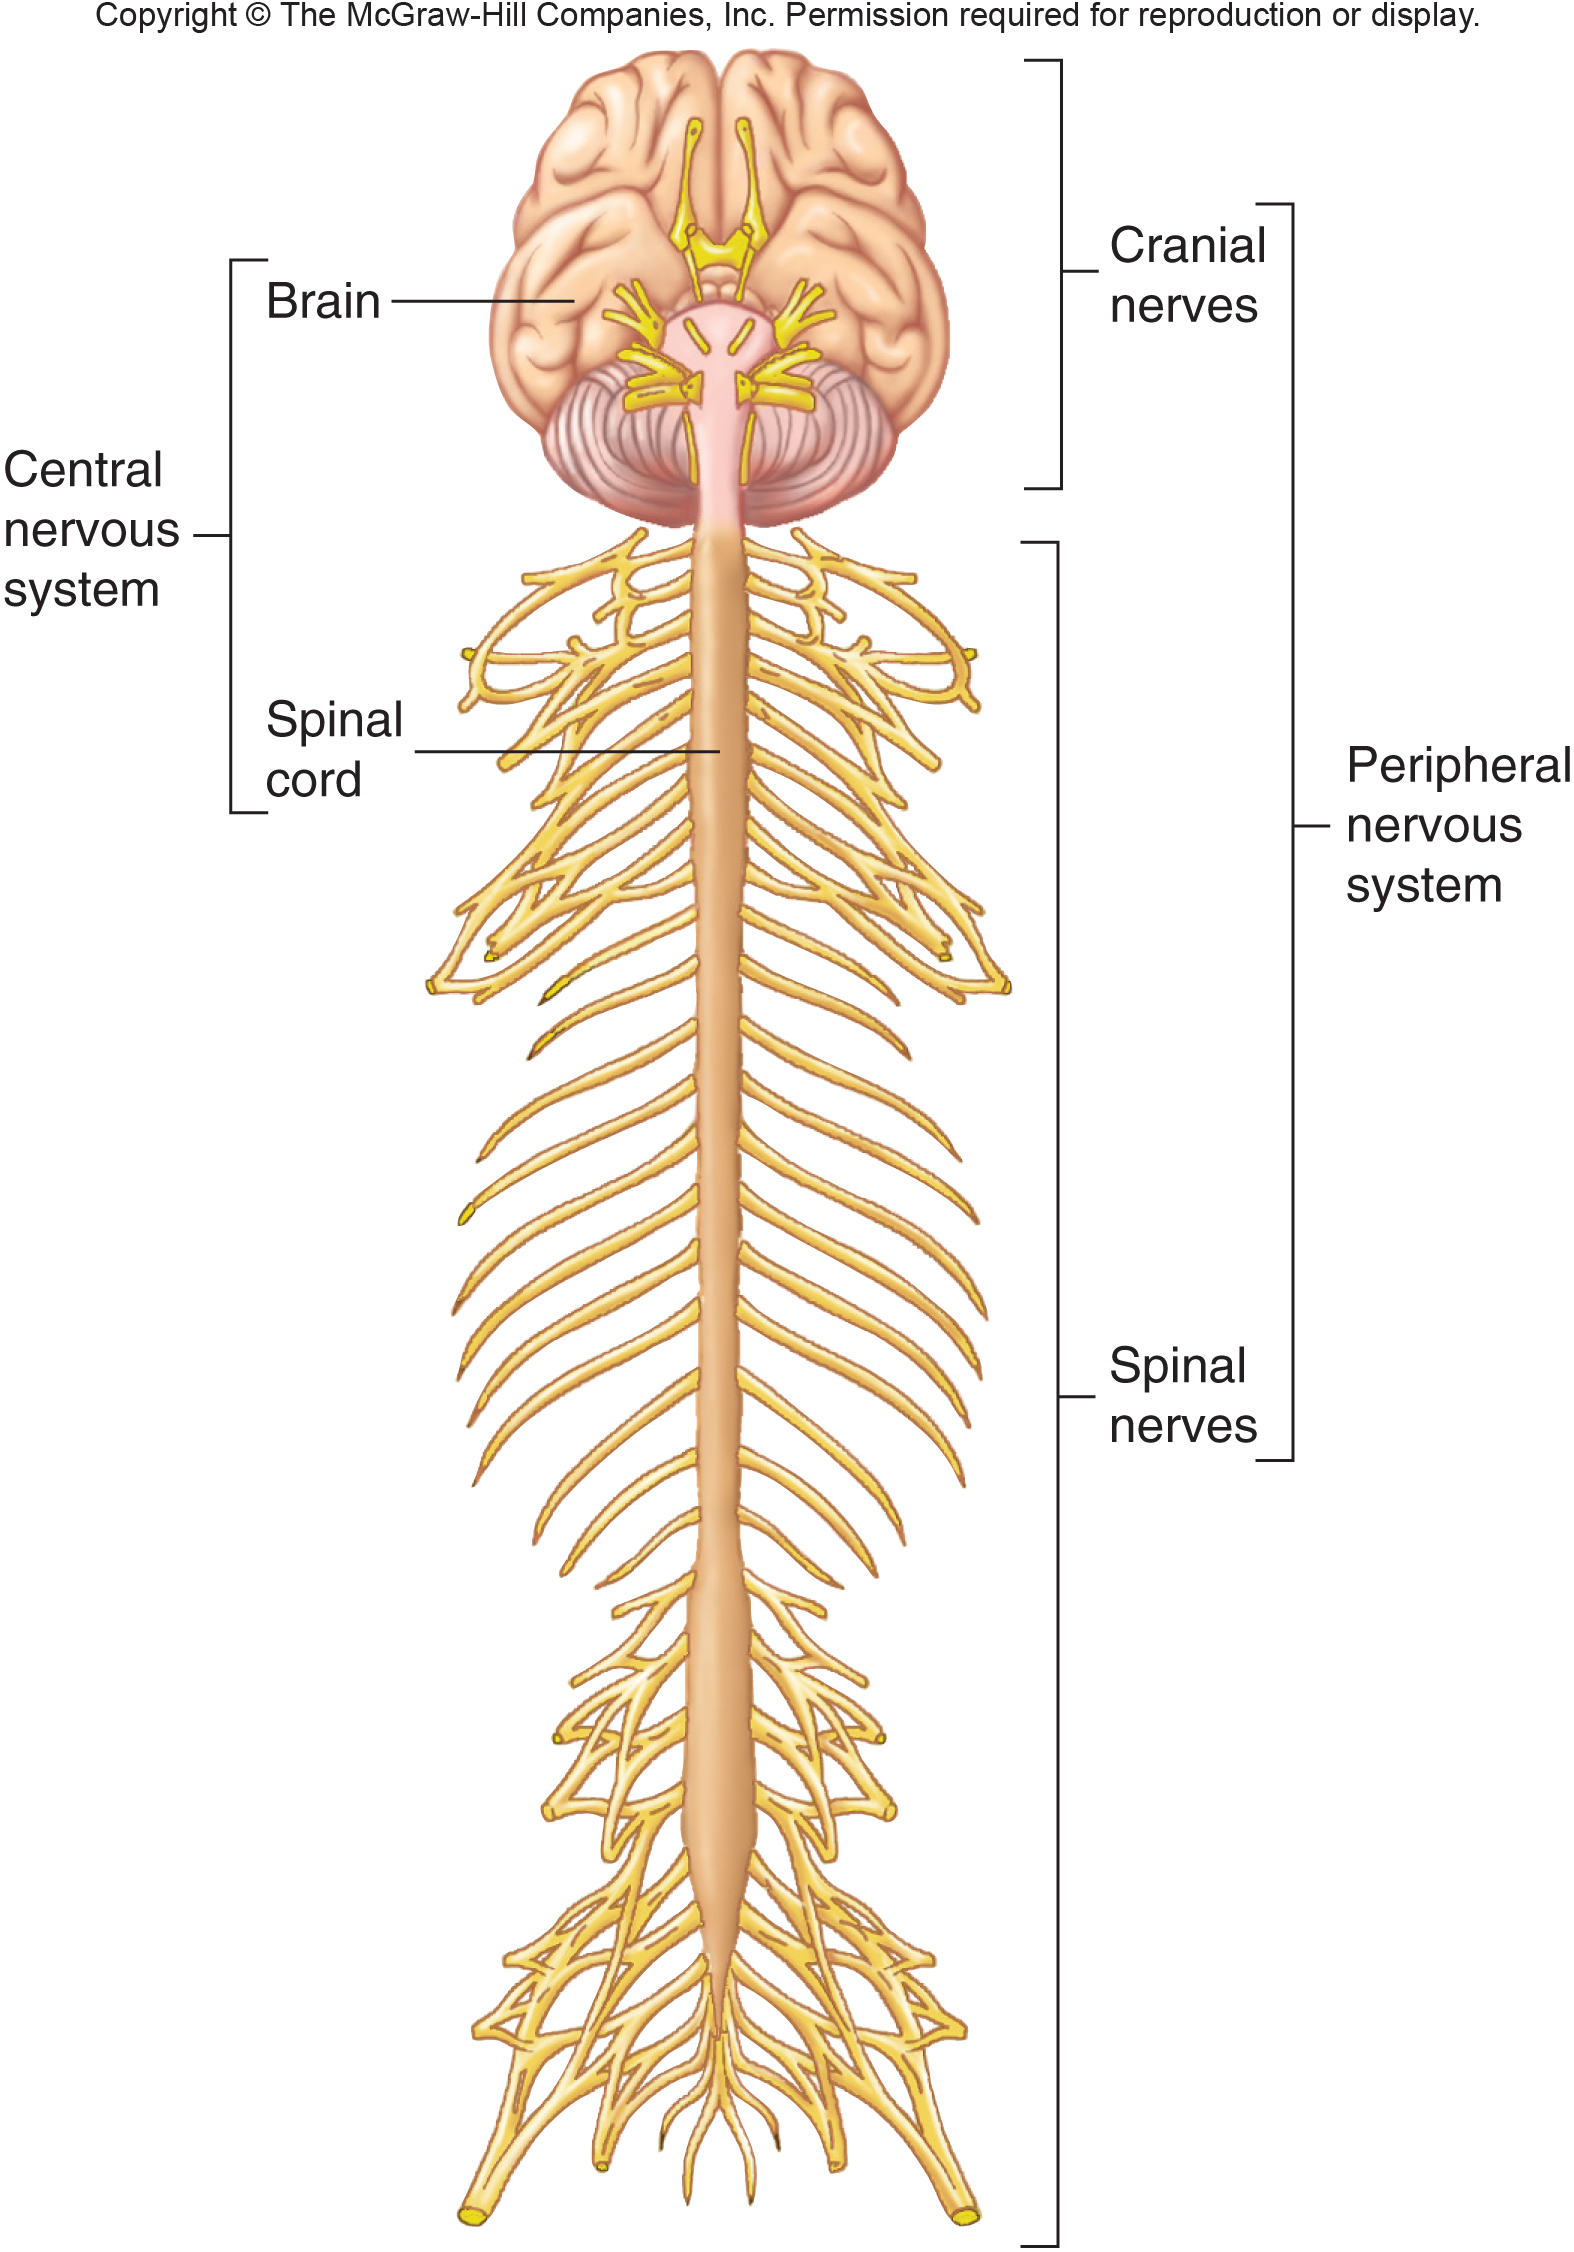 blank-nervous-system-diagram-nervous-system-diagram-blank-the